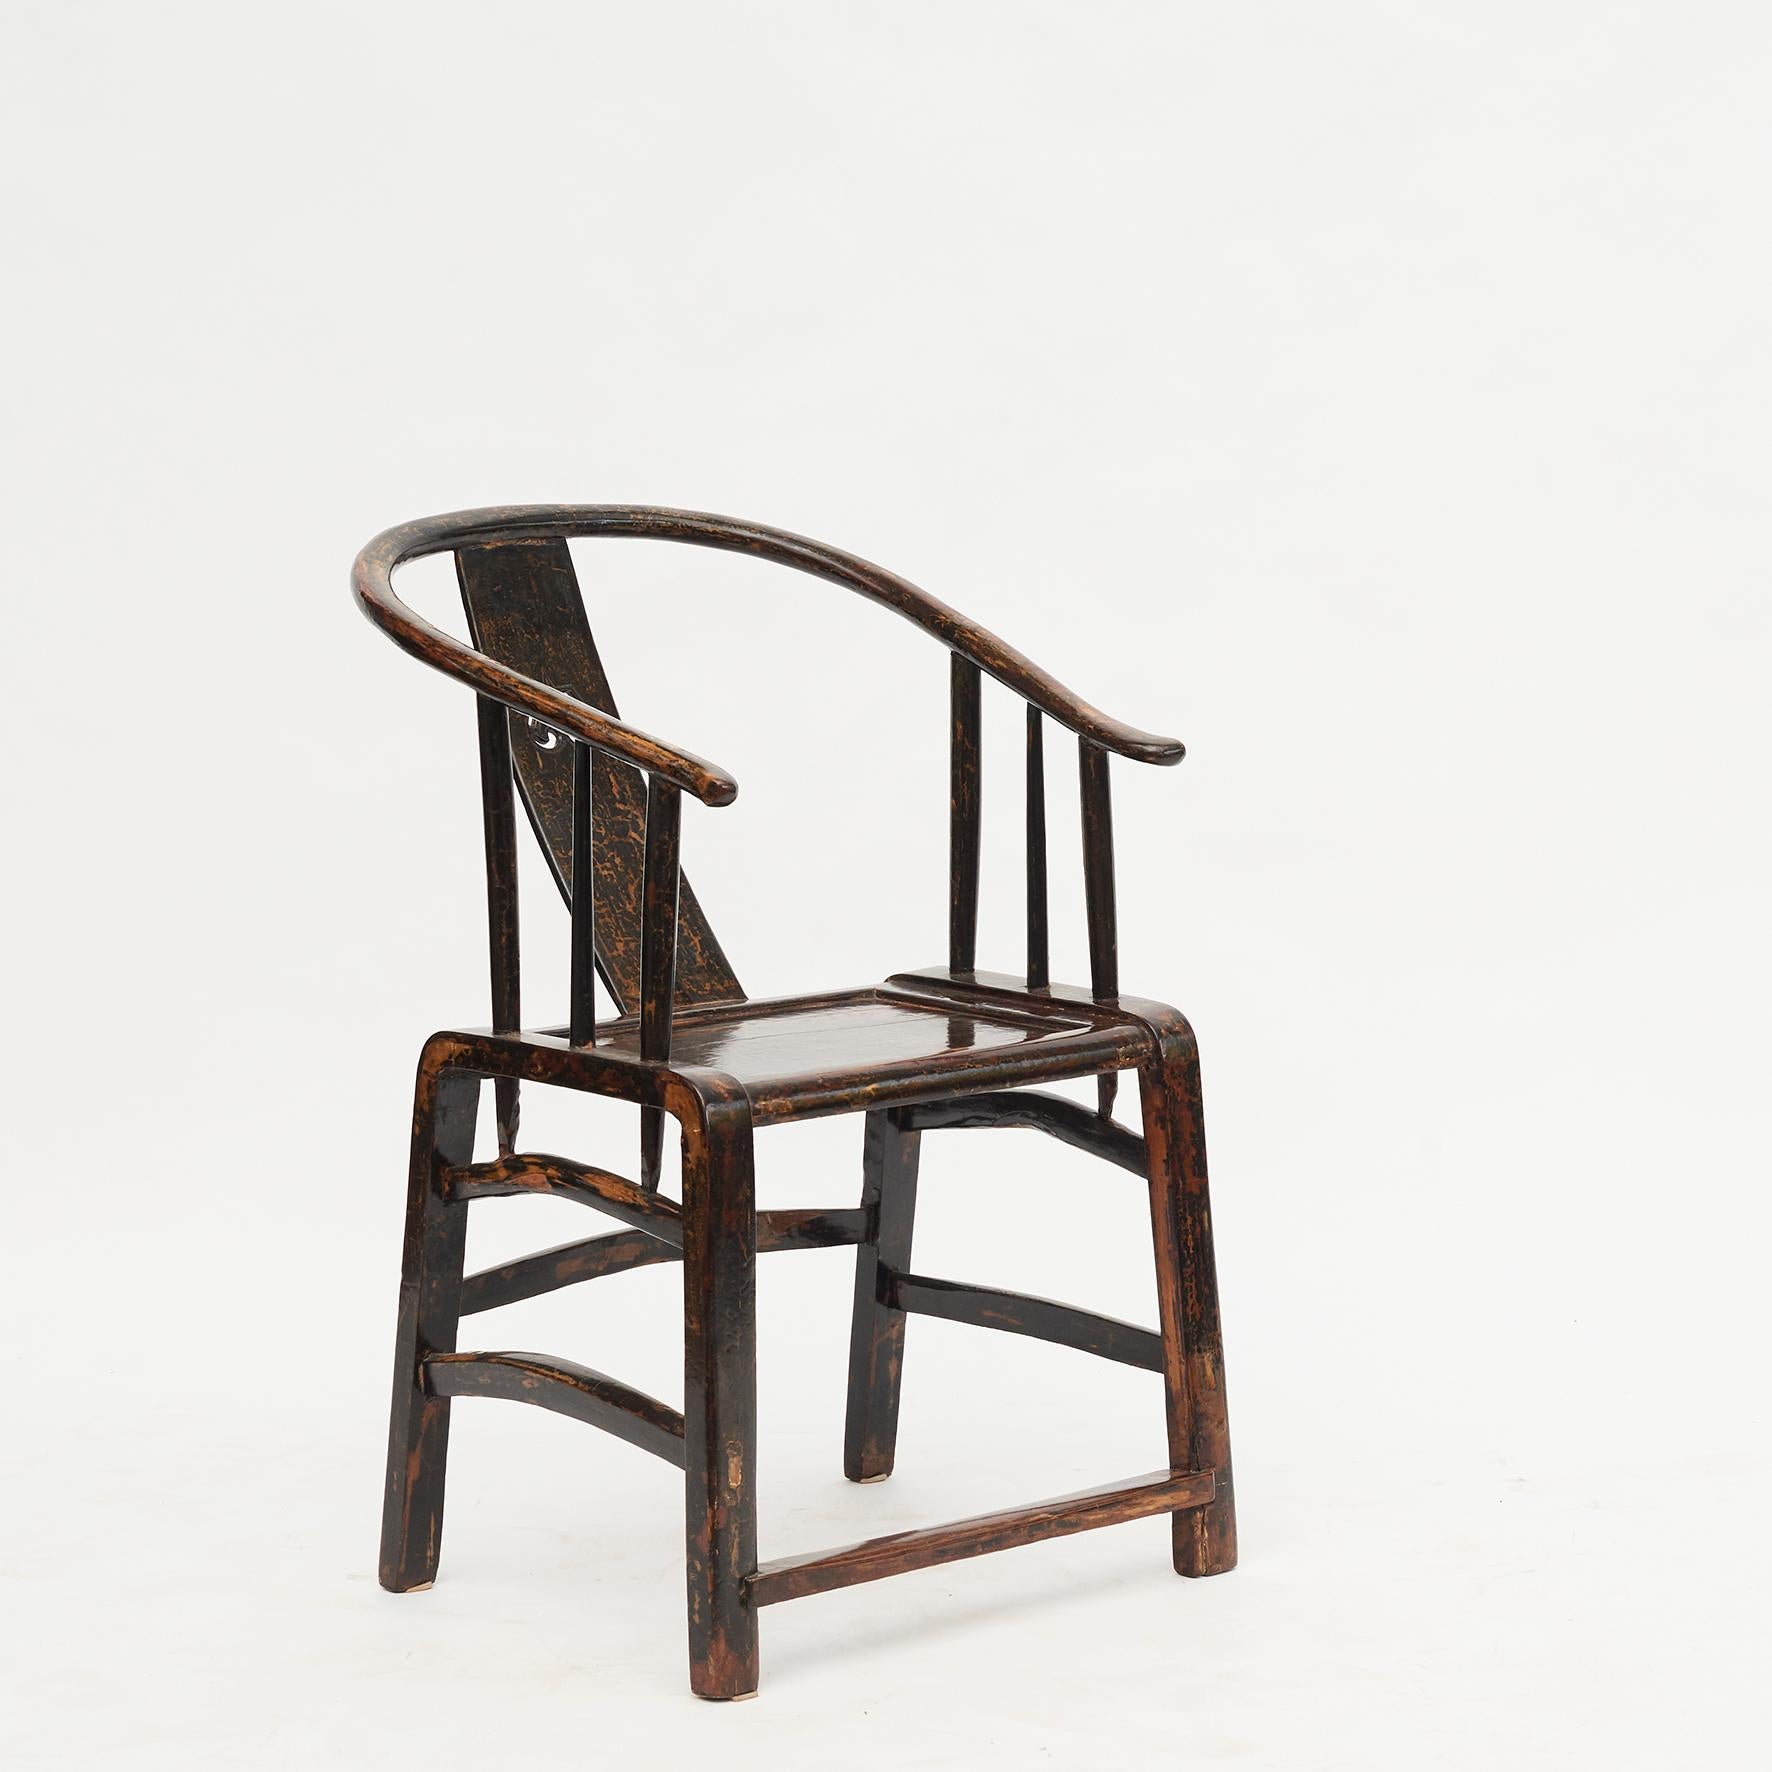 Ein Paar 'Lazy Chairs' aus Nussbaum, schwarz lackiert, mit natürlichen Abnutzungsspuren, die den Stühlen ein aufregendes und künstlerisches Aussehen verleihen.
Ming-Stil, frühes 19. Jahrhundert, China. 
Der Begriff 